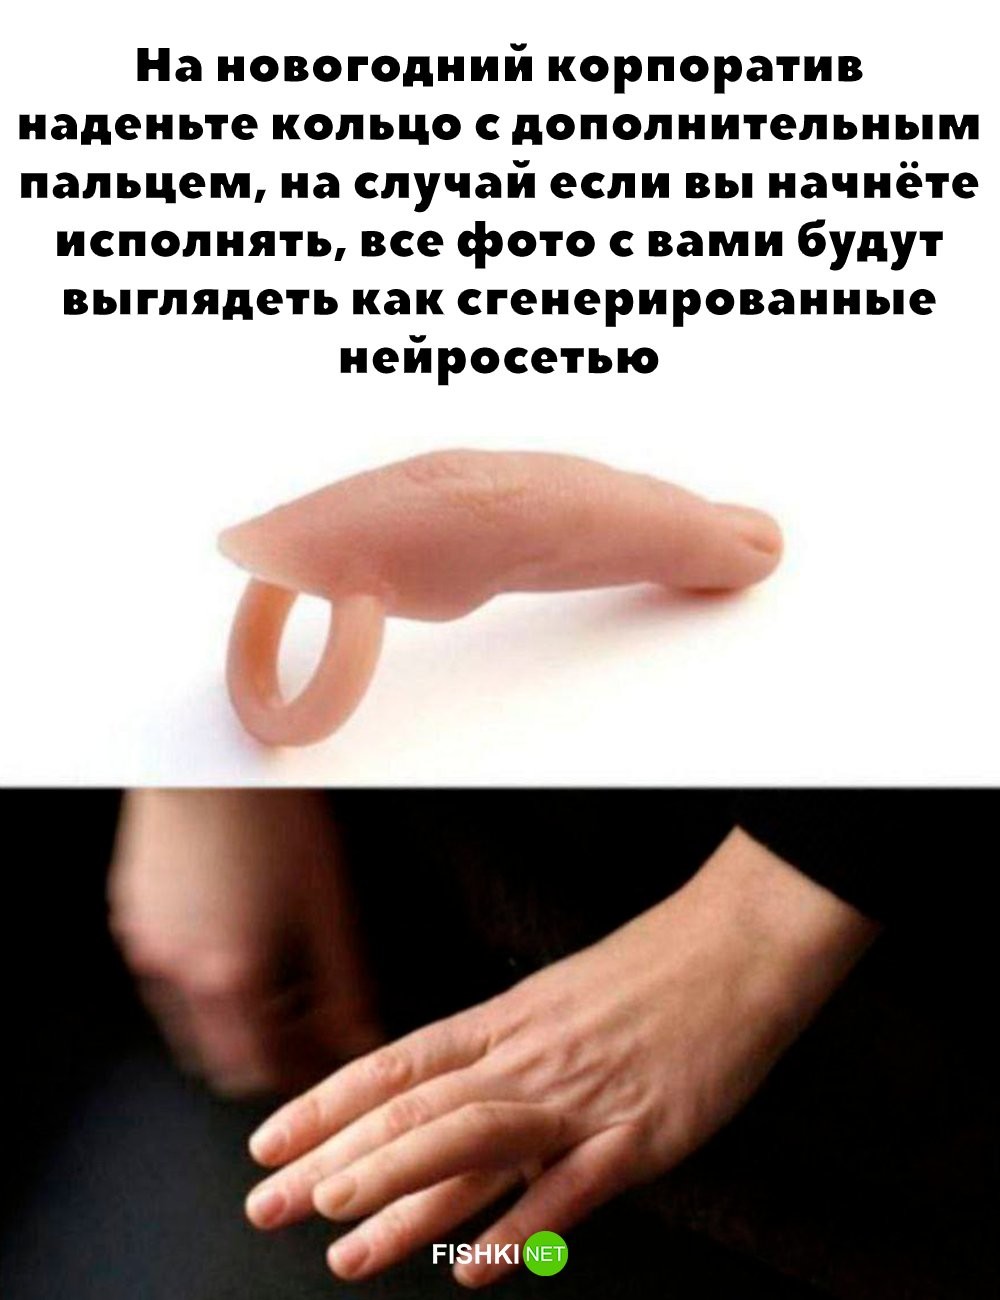 Кольцо с дополнительным пальцем